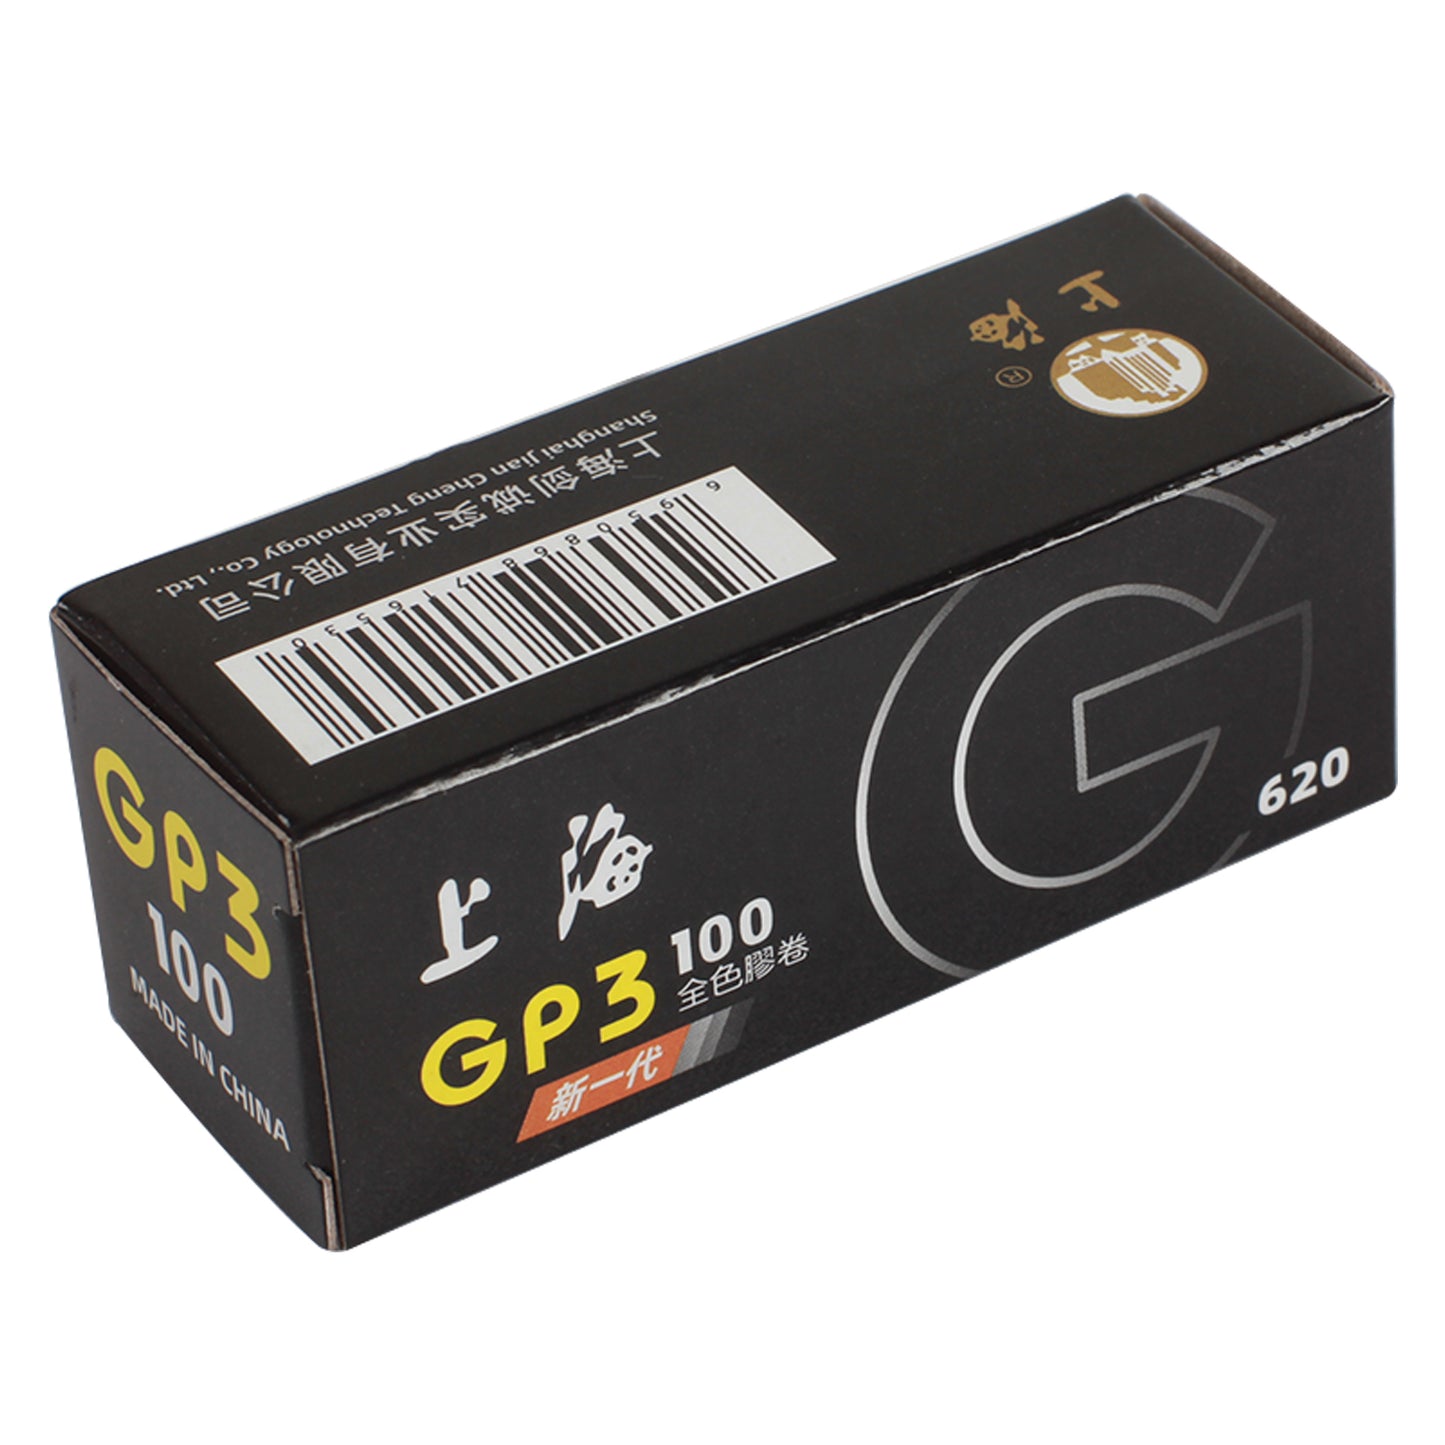 2 rotoli Shanghai GP3 620 ISO 100 Black &amp; White Noir et Blanc Film Freshest Day For All 620 Camera